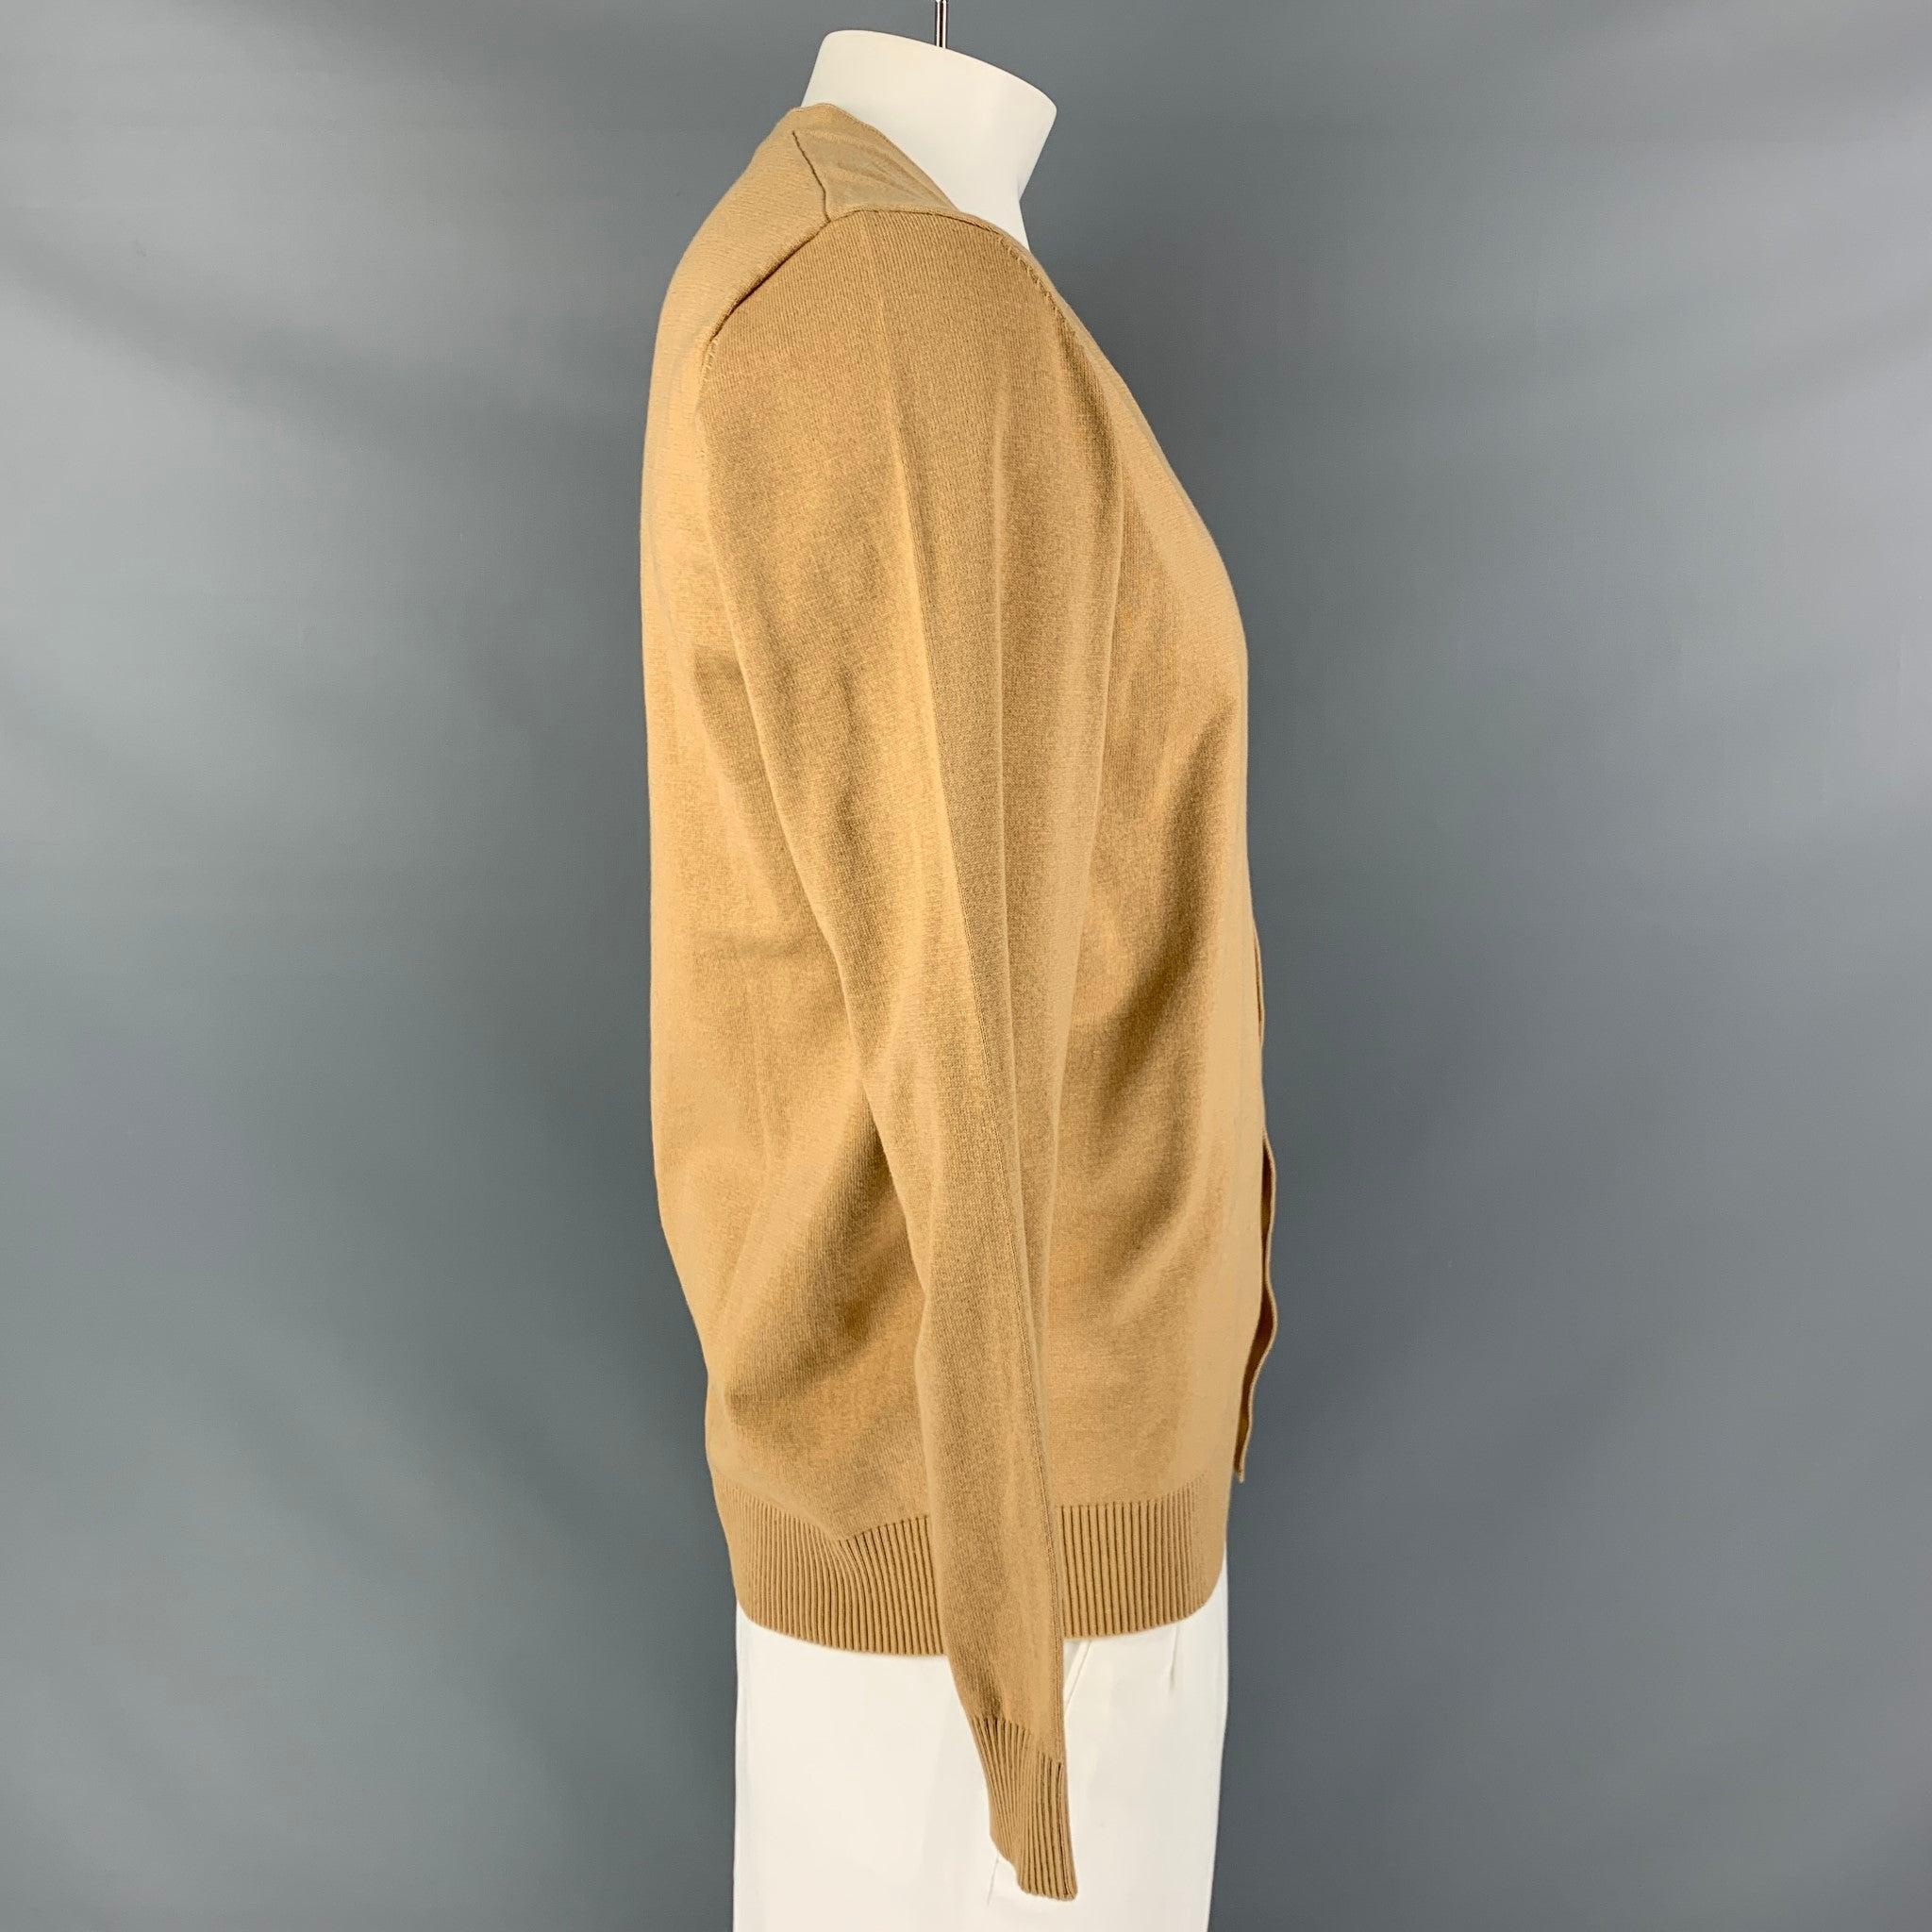 Le cardigan de KITON est en tricot de cachemire et de soie beige et présente une encolure en V et une fermeture à bouton. Nouveau avec des étiquettes. 

Marqué :   L 

Mesures : 
 
Épaule : 18 pouces Poitrine : 46 pouces Manches : 25 pouces Longueur